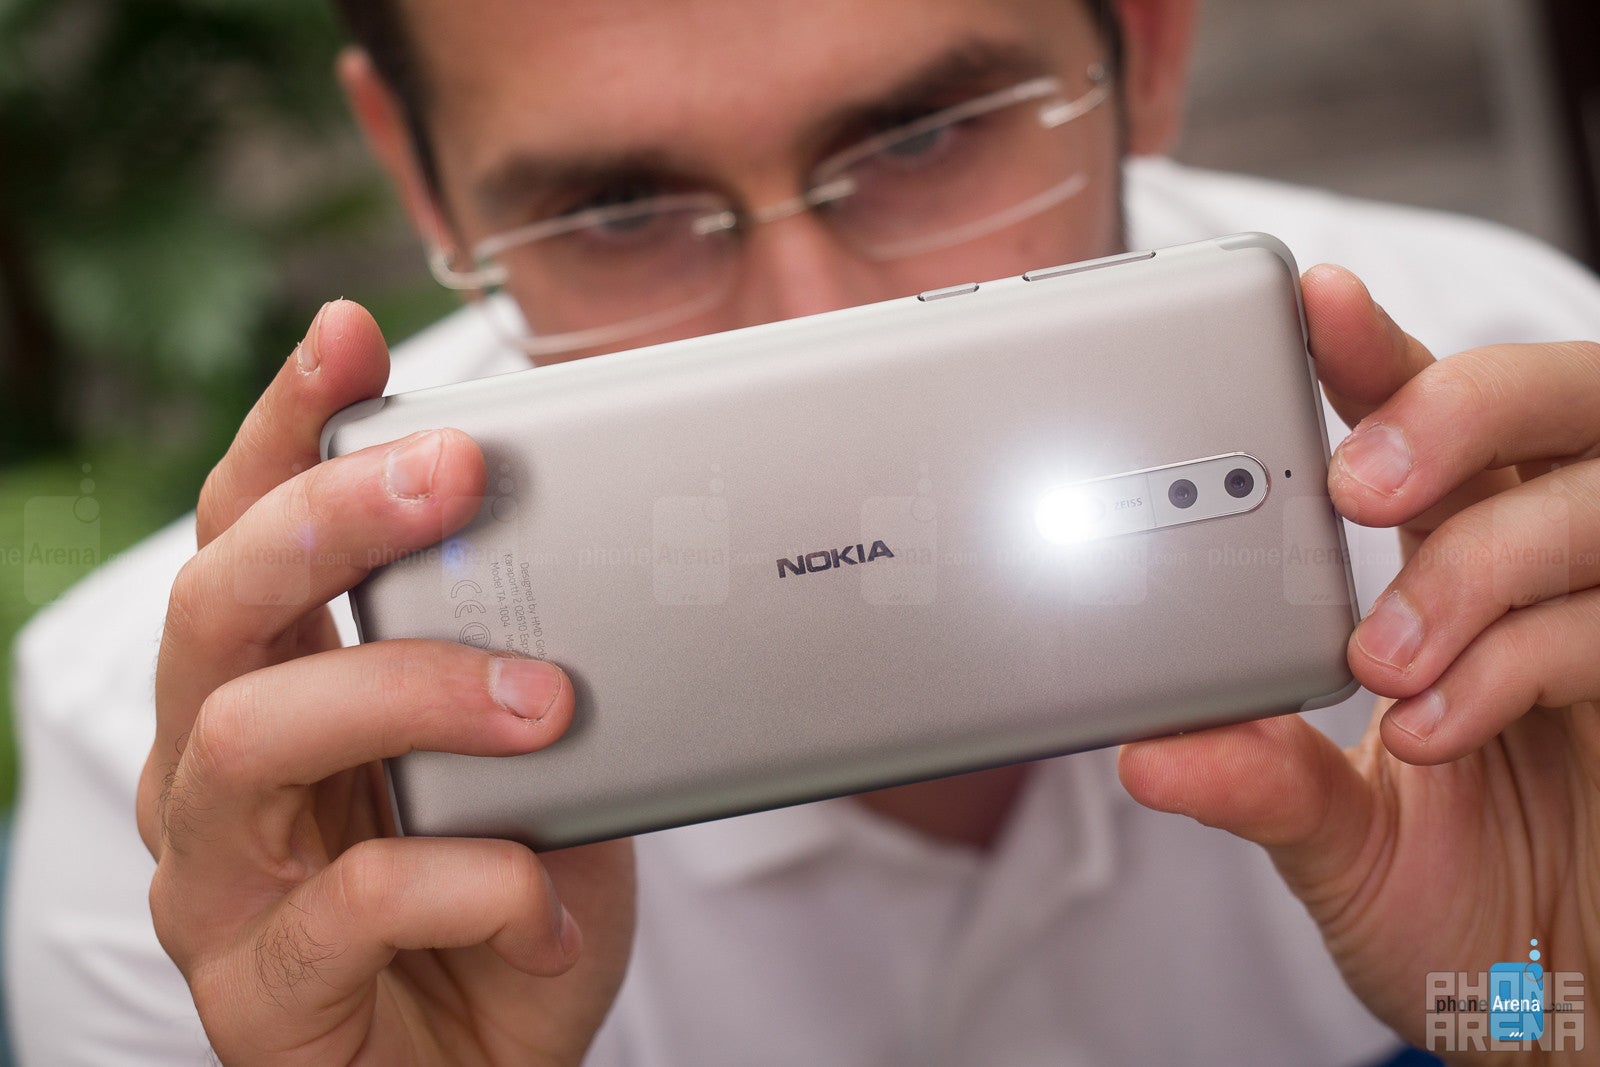 Nokia 8 Review